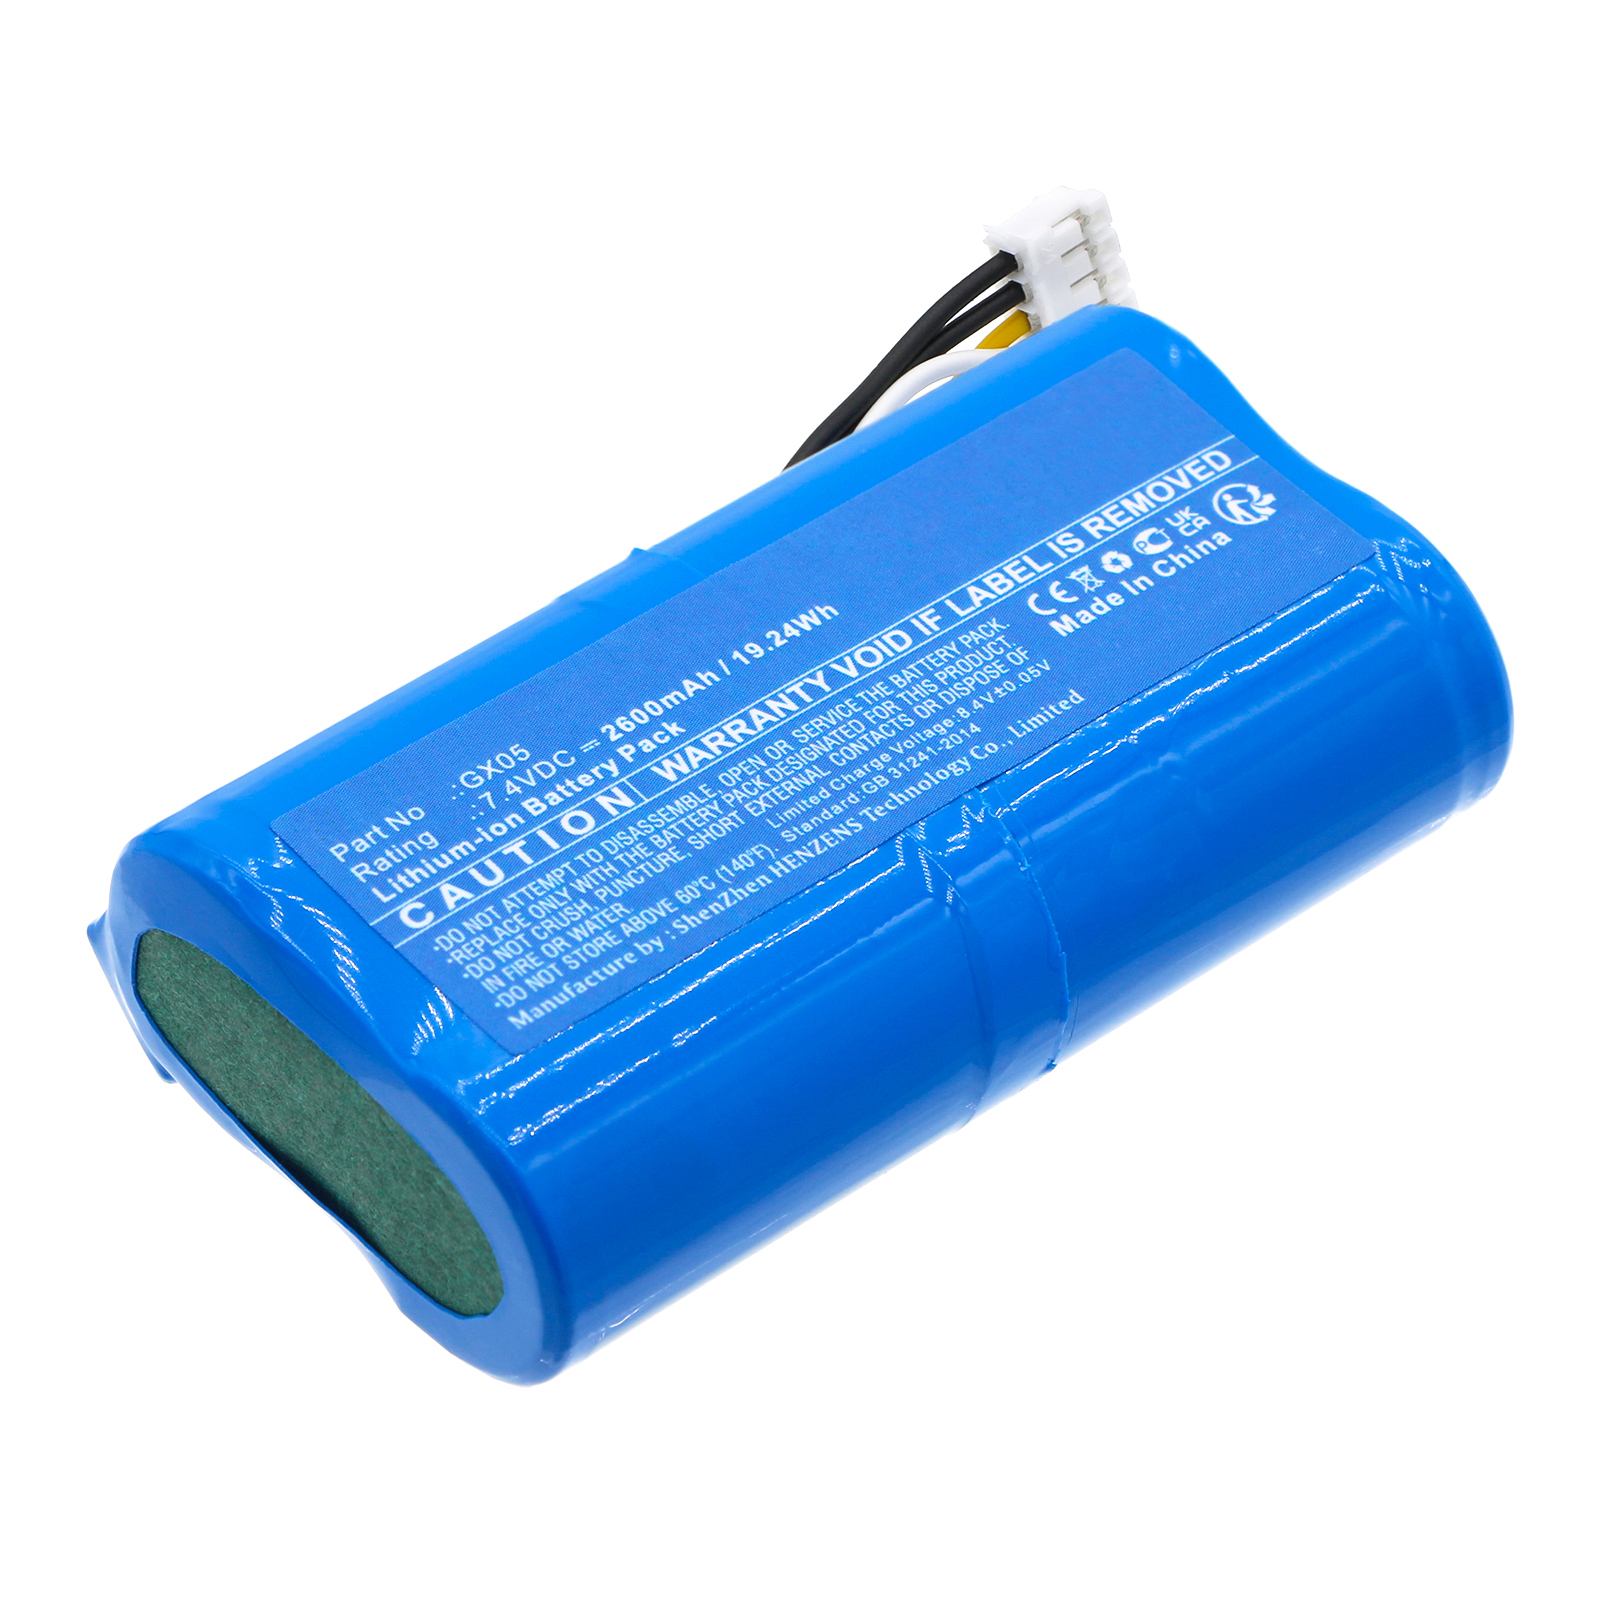 Batteries for DejavooCredit Card Reader